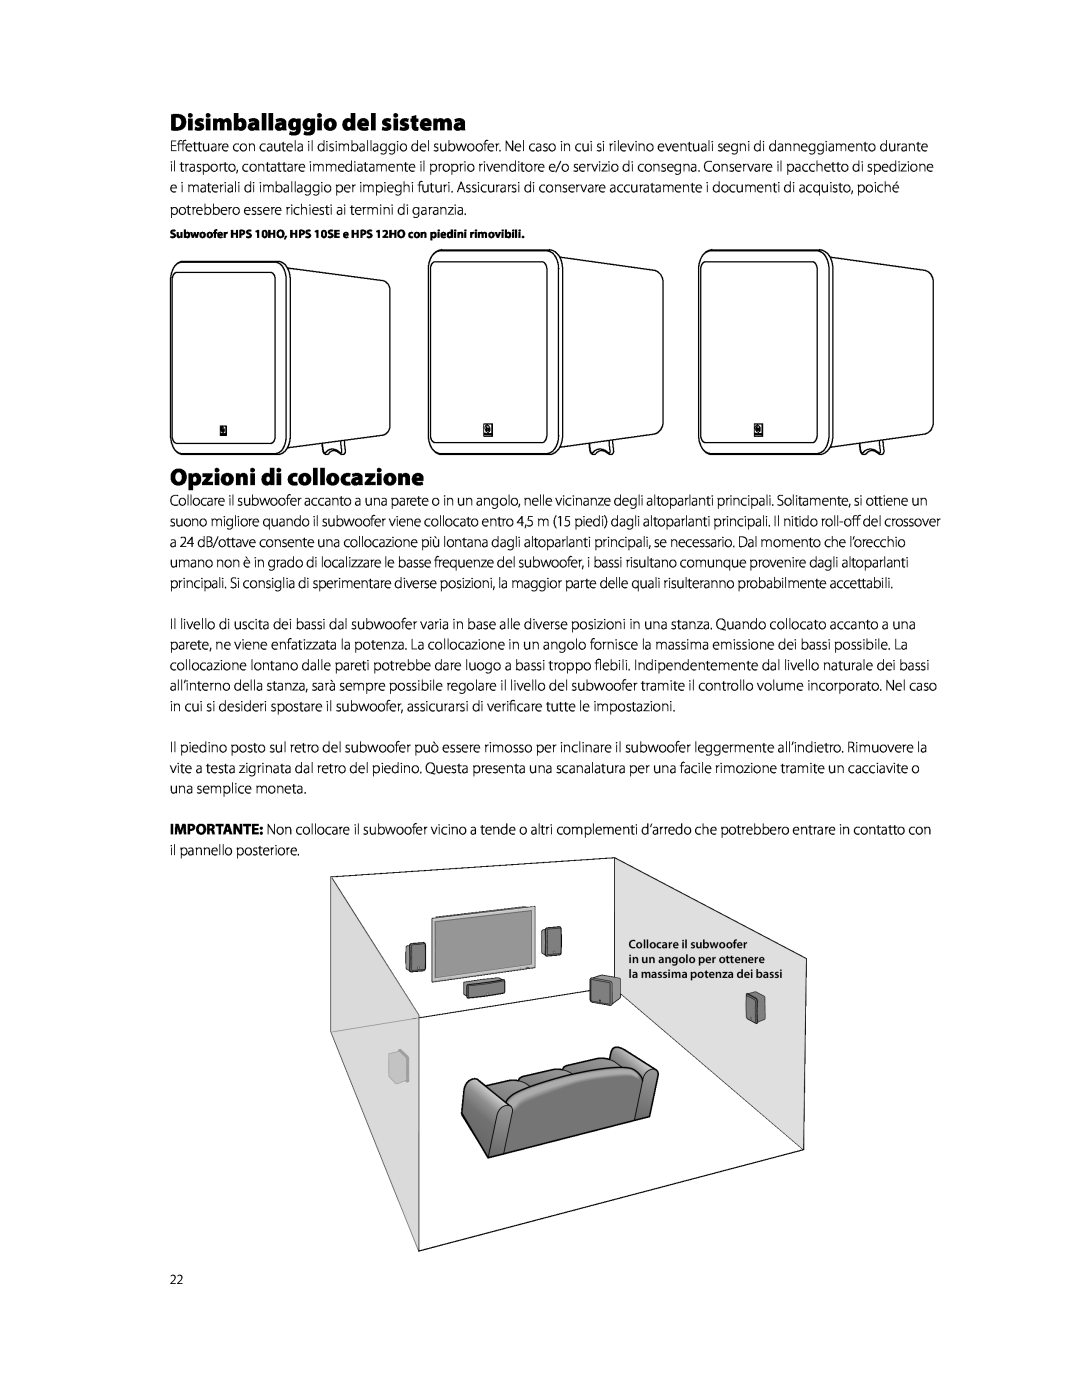 Boston Acoustics HPS10HO owner manual Disimballaggio del sistema, Opzioni di collocazione, la massima potenza dei bassi 